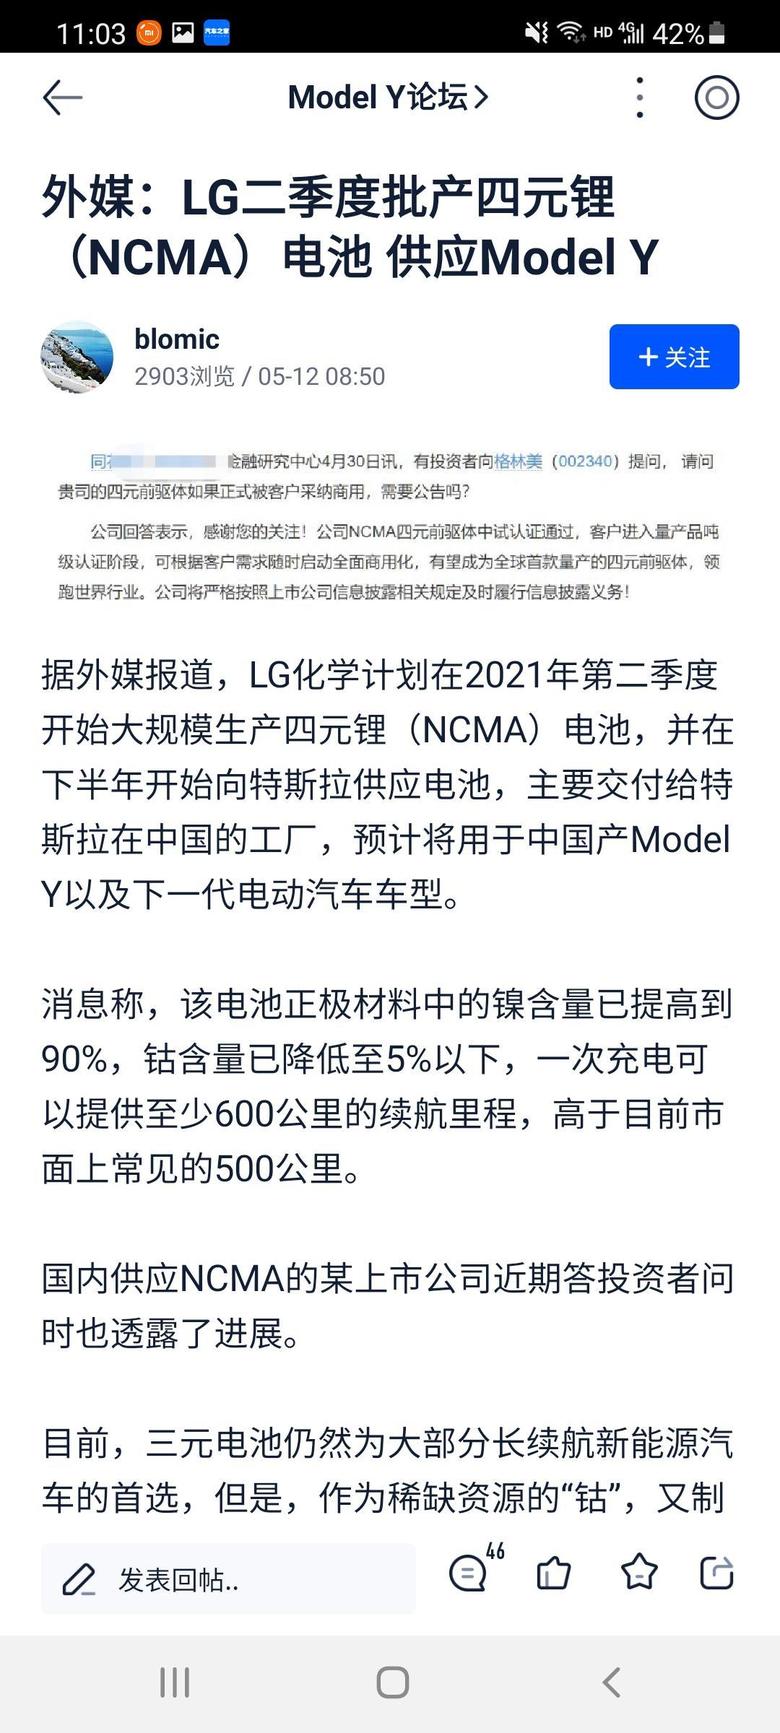 model y 三季度modelY有可能能装配上四元锂电池吗！另外听说上海工厂停产交付两周，对外解释是产品优化升级，是真是假呀？